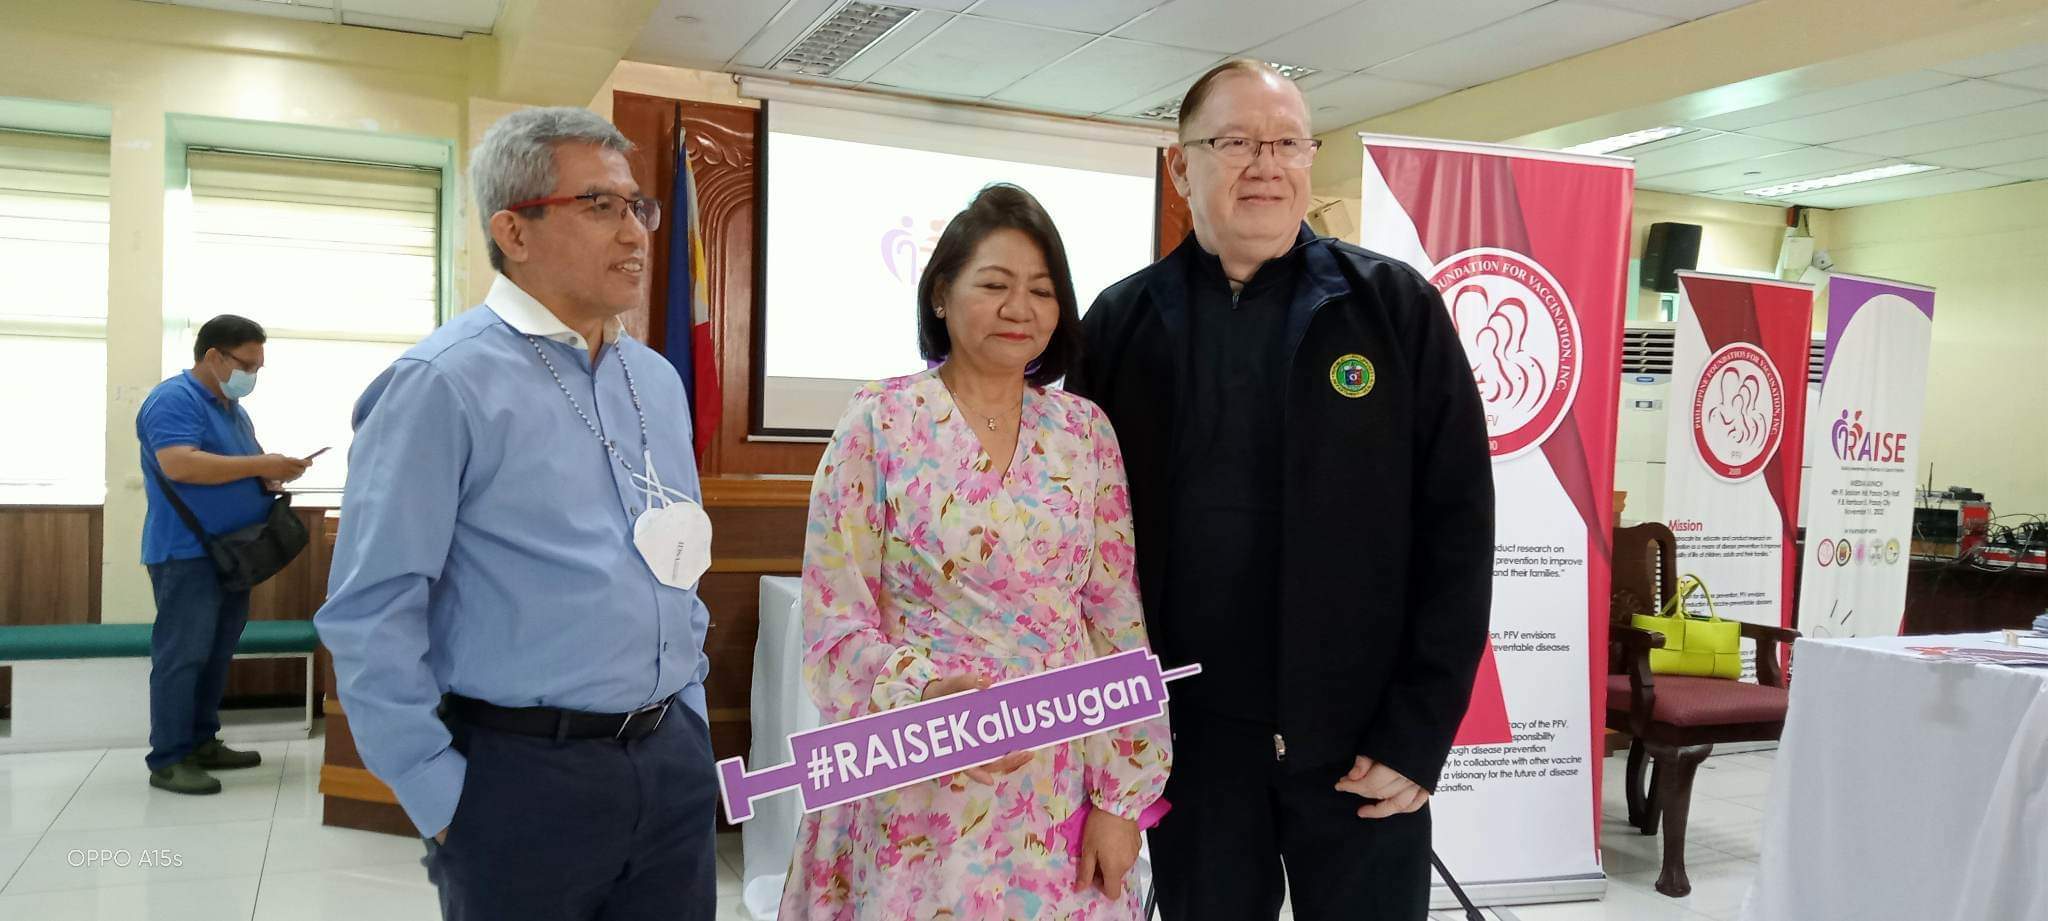 Kalusugan ng senior citizens, tutugunan ng RAISE Coalition